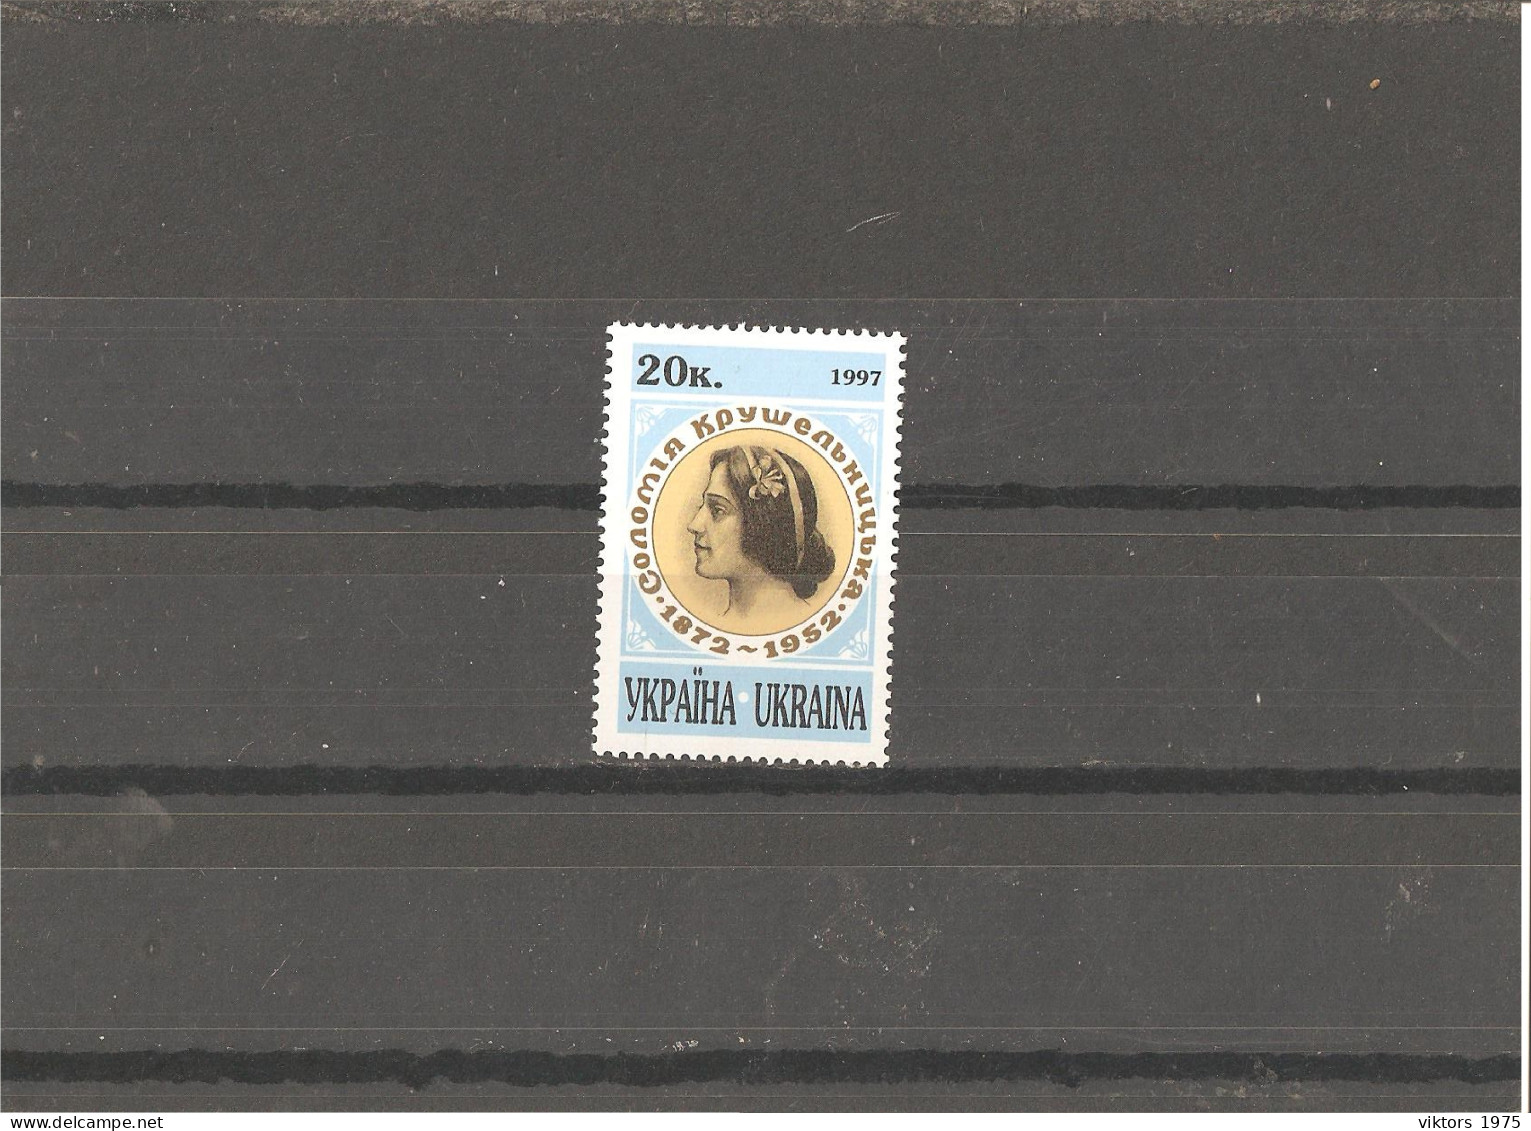 MNH Stamp Nr.219 In MICHEL Catalog - Ukraine